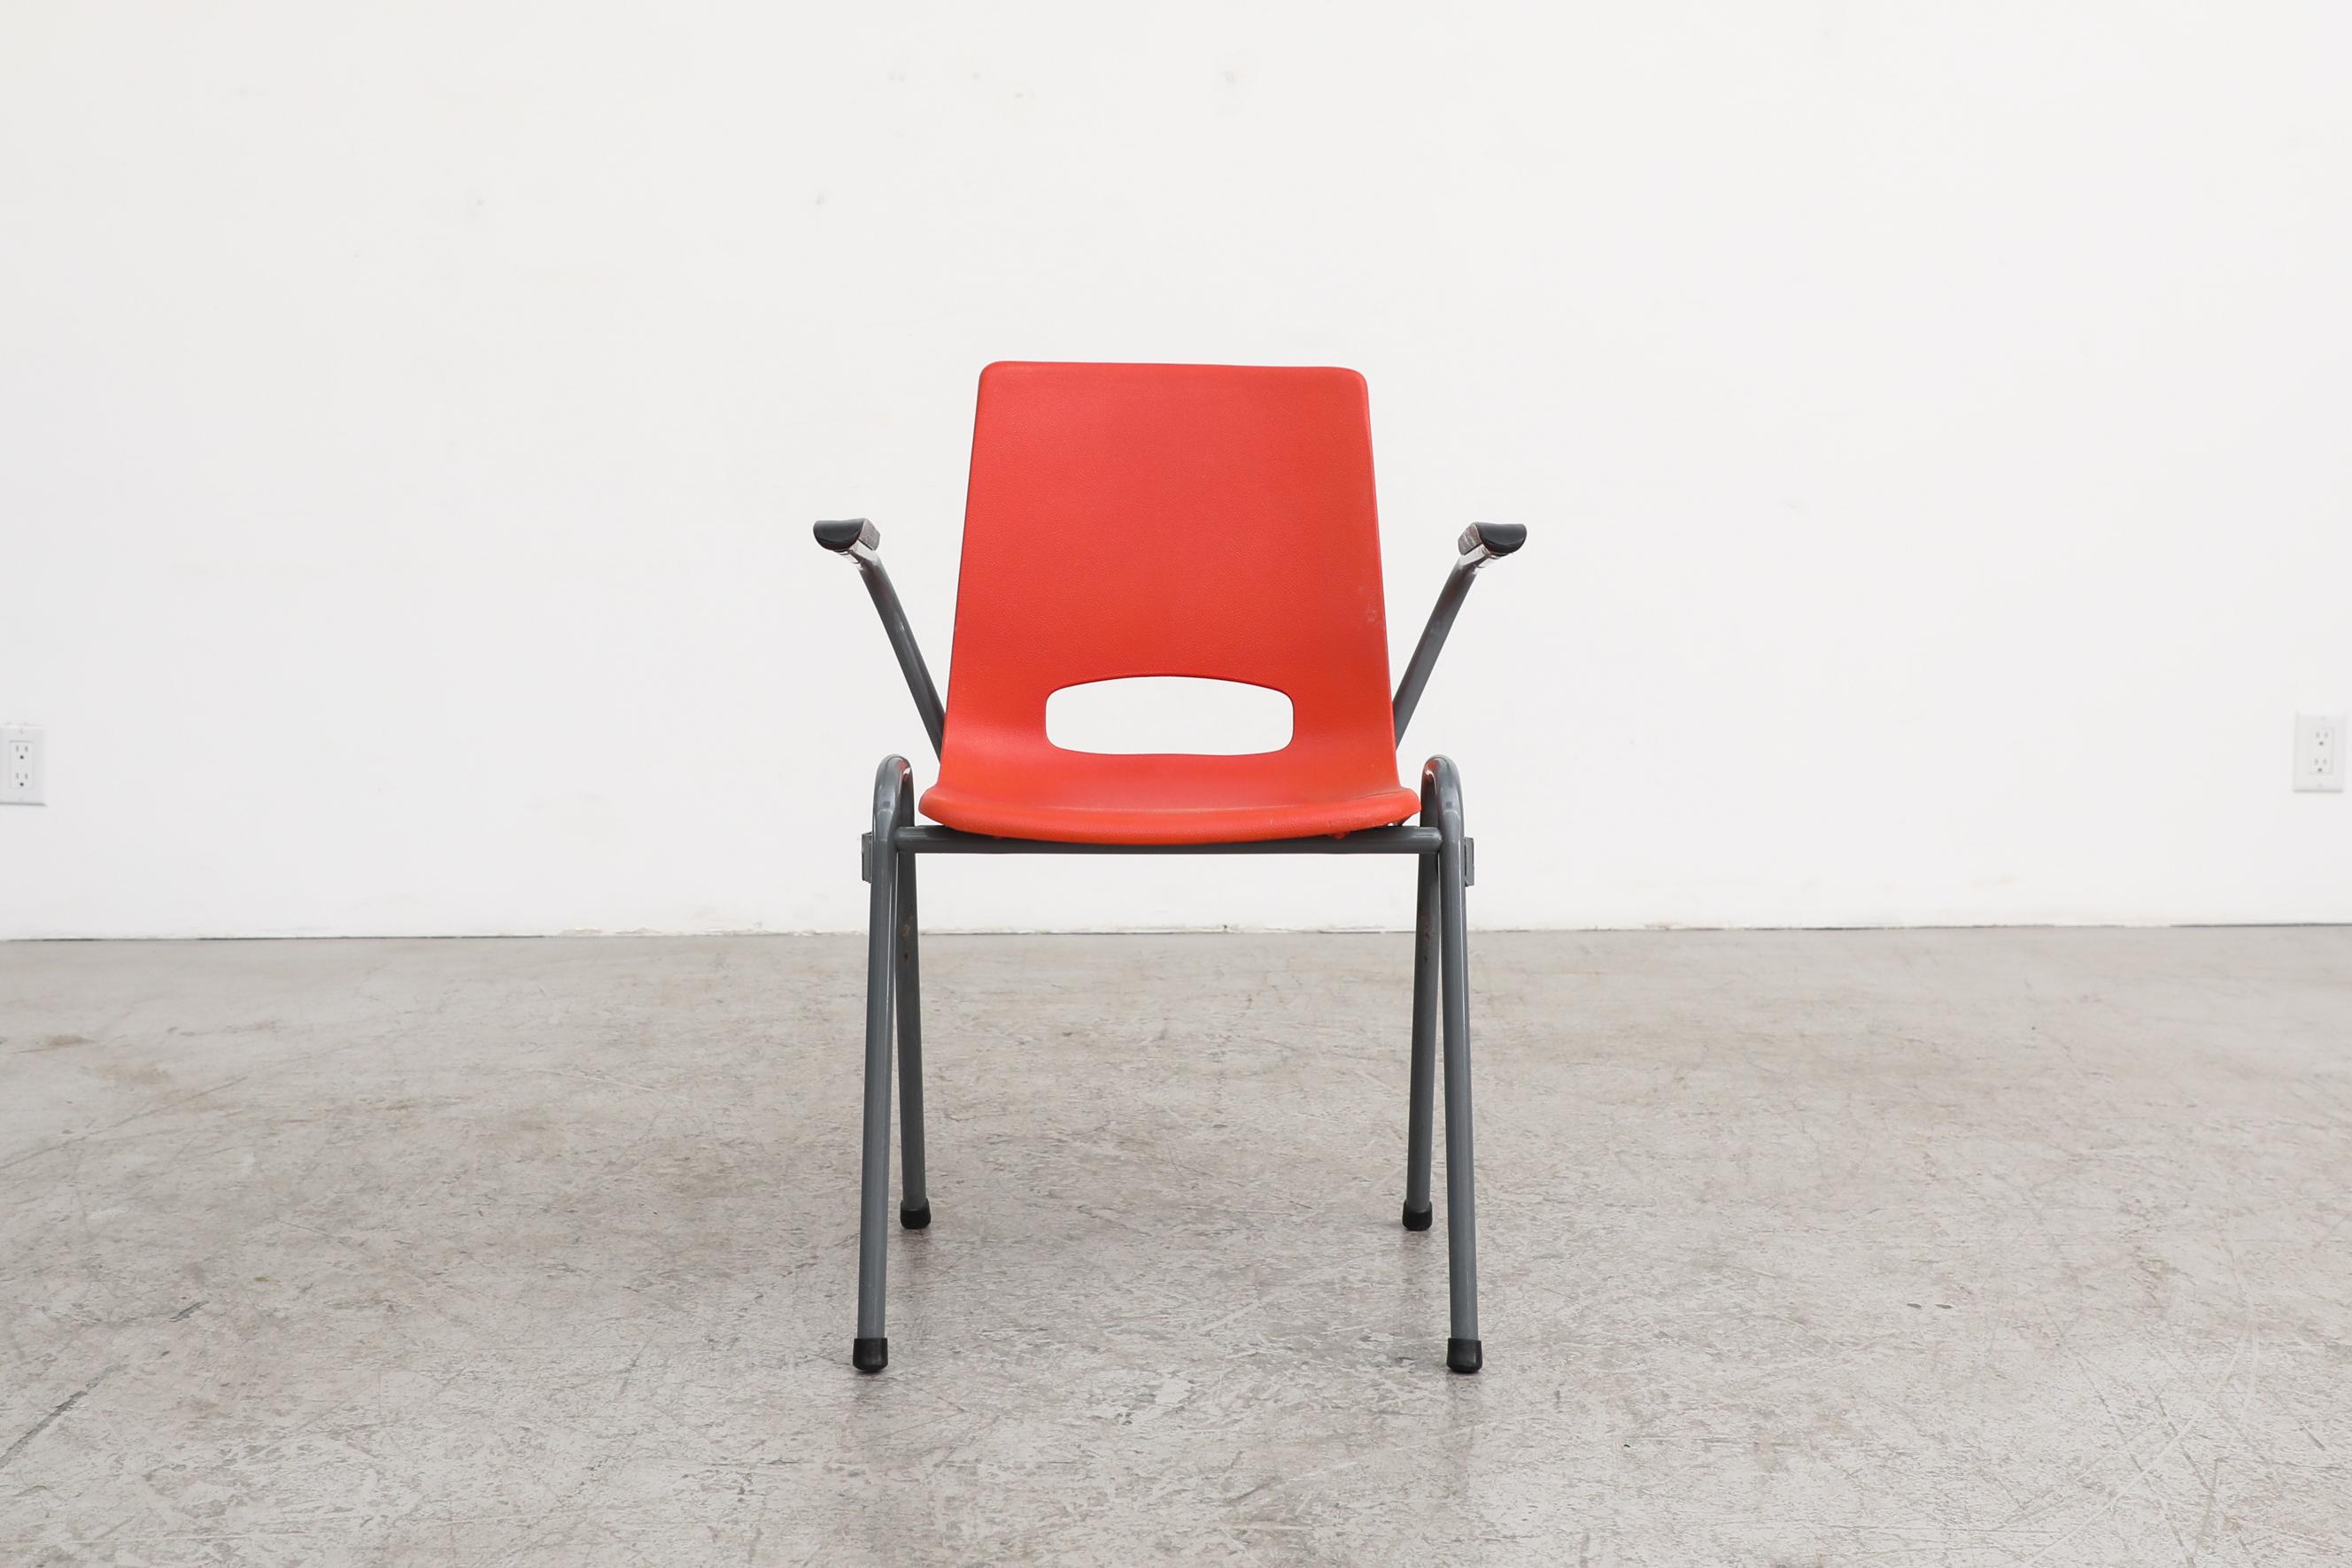 Fauteuils empilables en plastique rouge, inspirés de Robin Day, avec assise en acrylique moulé et pieds en métal émaillé gris. En état d'origine avec une usure visible, y compris des rayures sur les sièges et les cadres. L'usure est conforme à leur